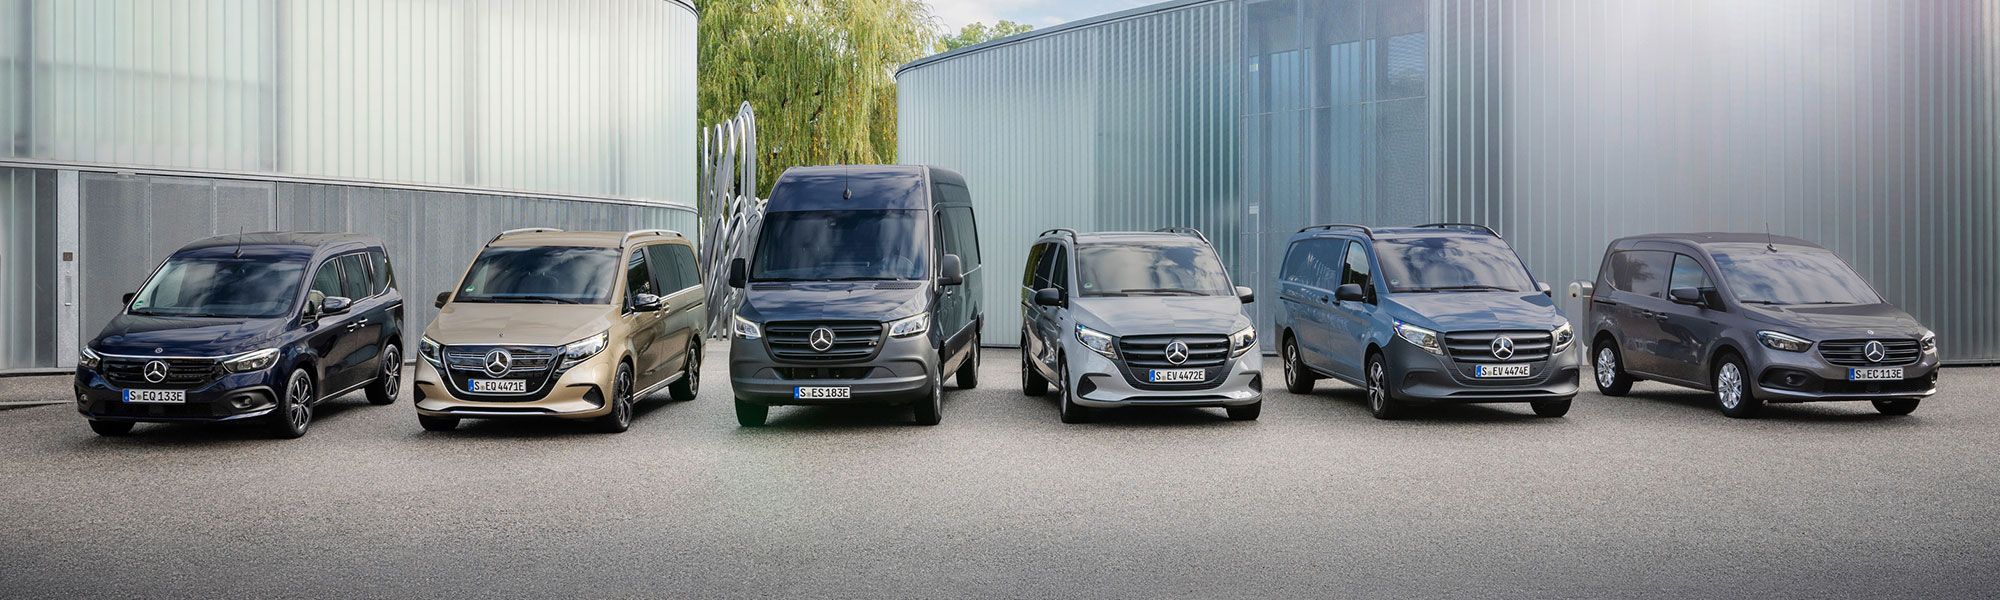 Mercedes-Benz Transporter/Vans im Autohaus SCHADE